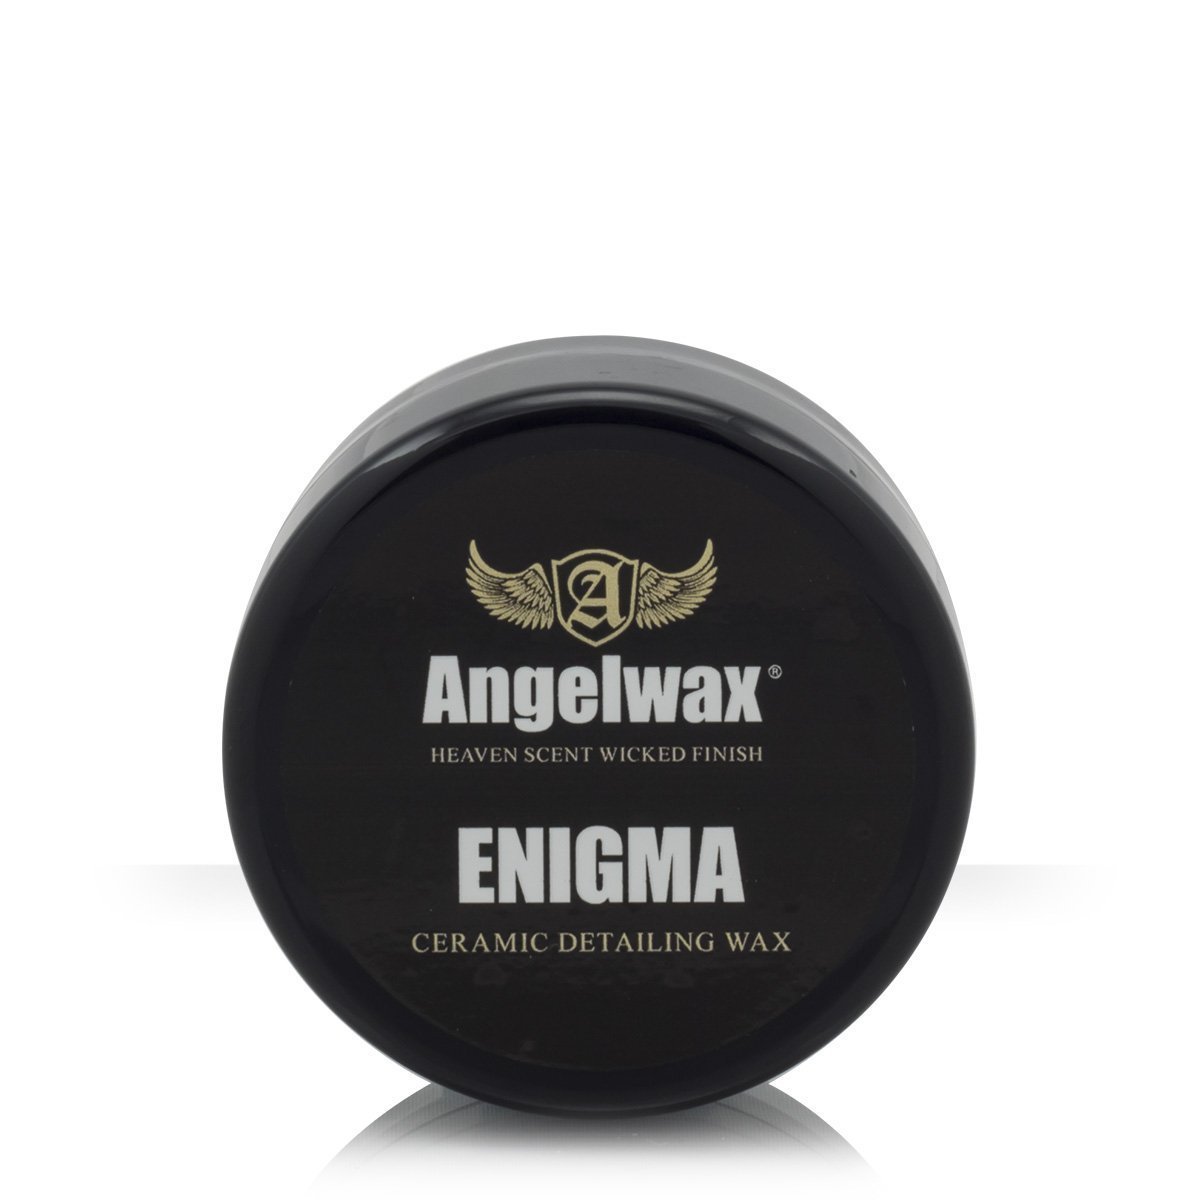 AngelWax Enigma Ceramic Wax Seramik İçerikli Katı Wax 33ml.